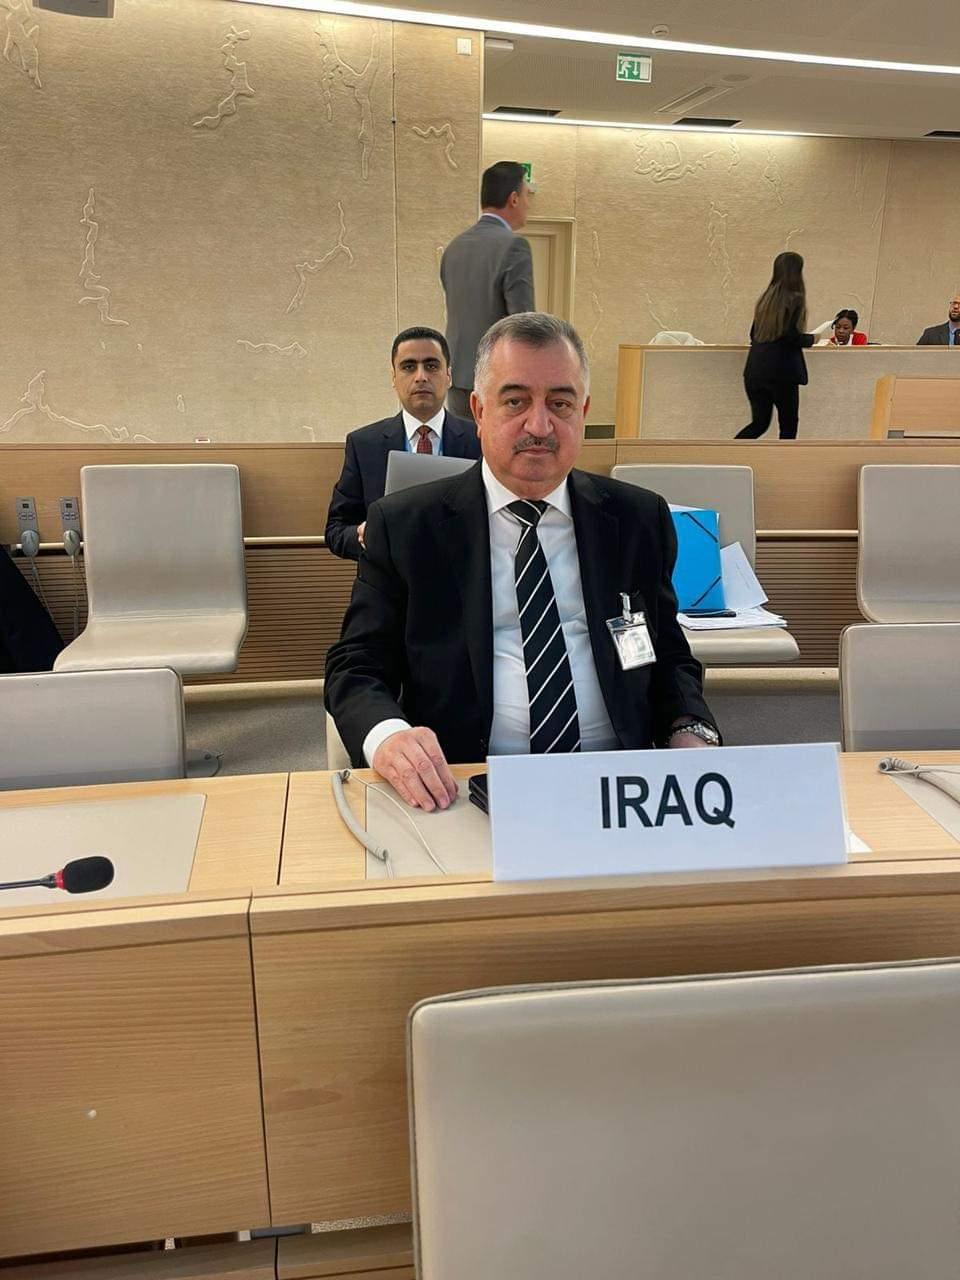 وكيل وزارة الخارجية للشؤون متعددة الأطراف والشؤون القانونية يلقي كلمة العراق بشأن مسألة عقوبة الإعدام